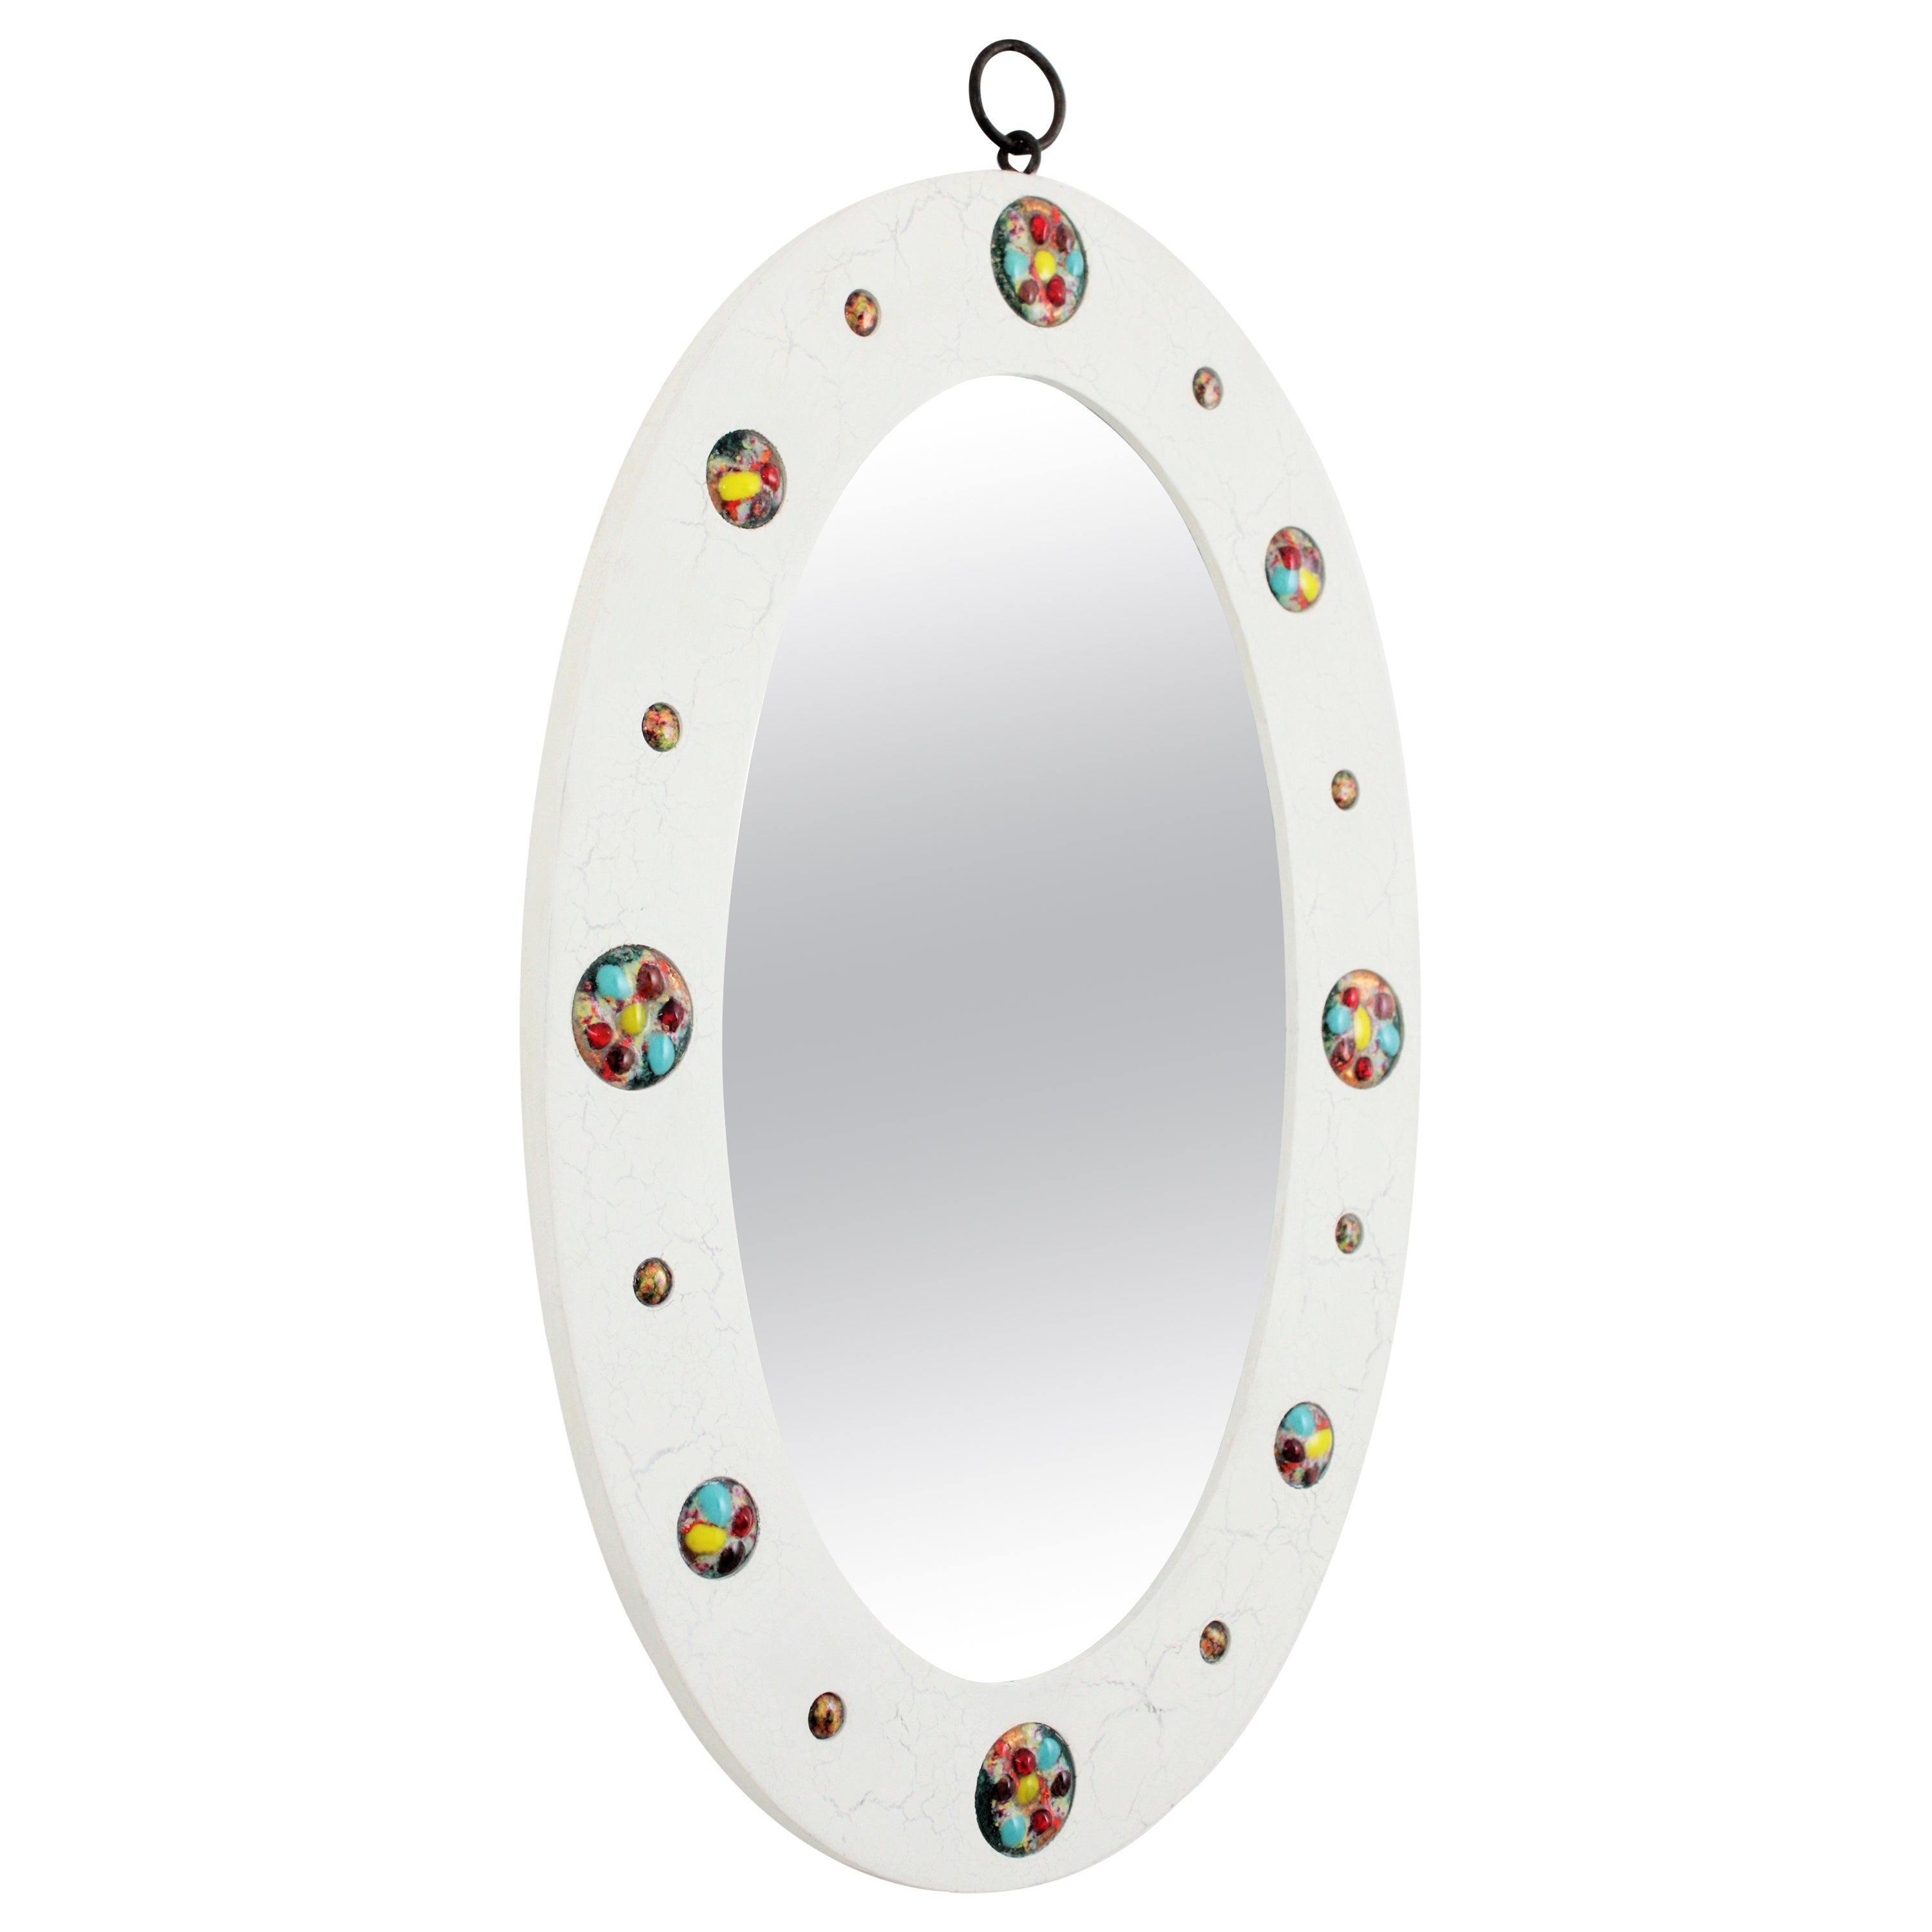 Ovaler Spiegel aus Holz und Emaille mit weißer, rissiger Patina aus der Jahrhundertmitte. Spanien, 1960er Jahre.
Ein schöner ovaler, weiß patinierter Spiegel mit Risseffekt und bunten, kreisförmigen Emaille-auf-Kupfer-Stücken, die den Rahmen und